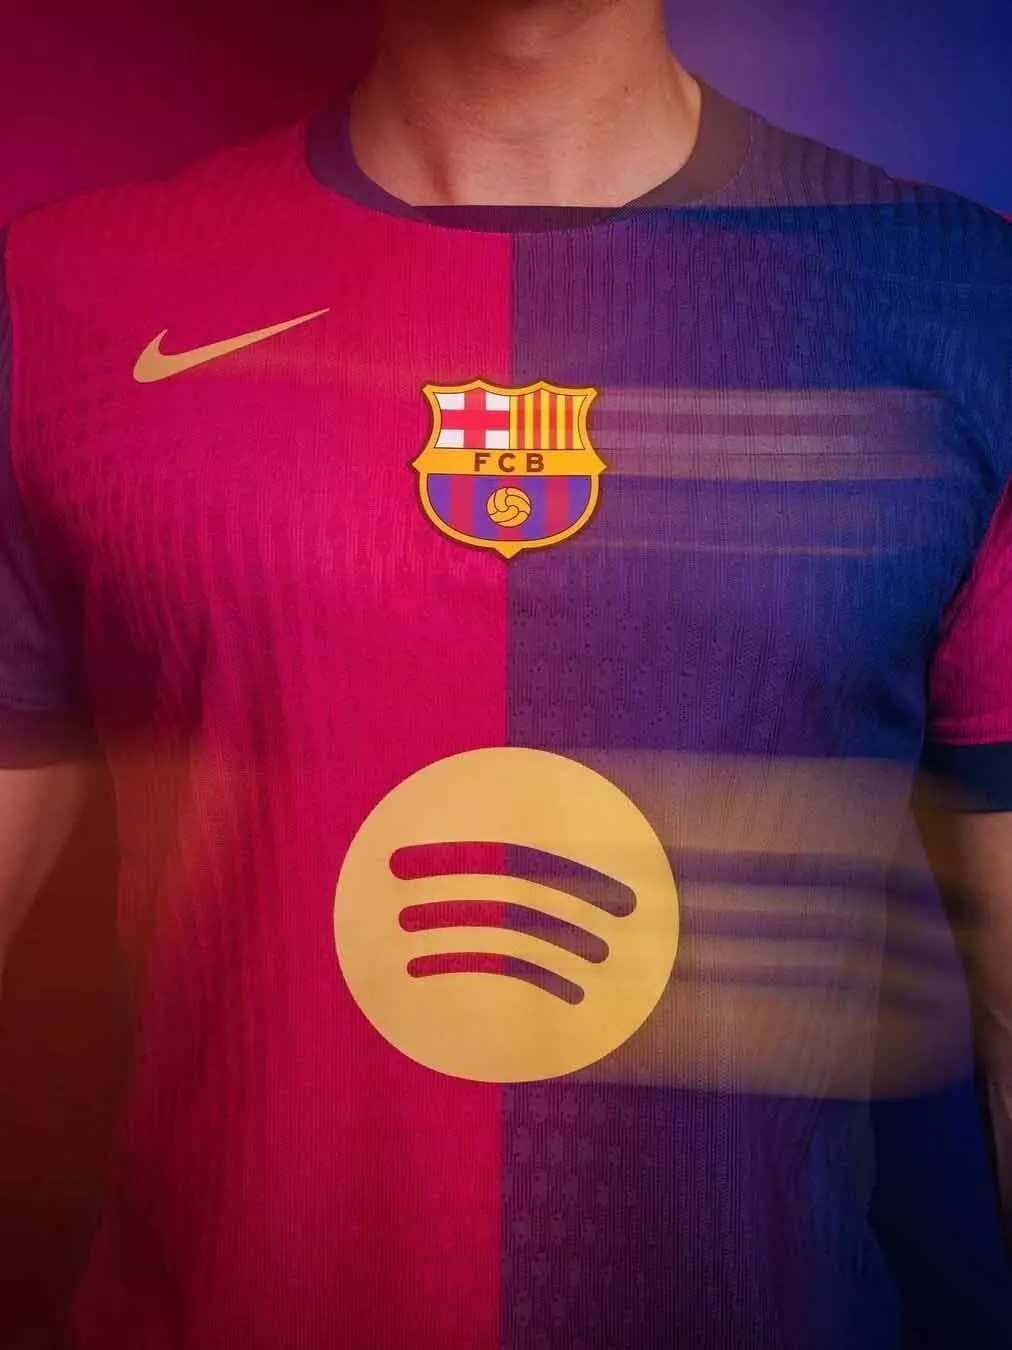 FC Barcelona ने नई होम किट लांच की